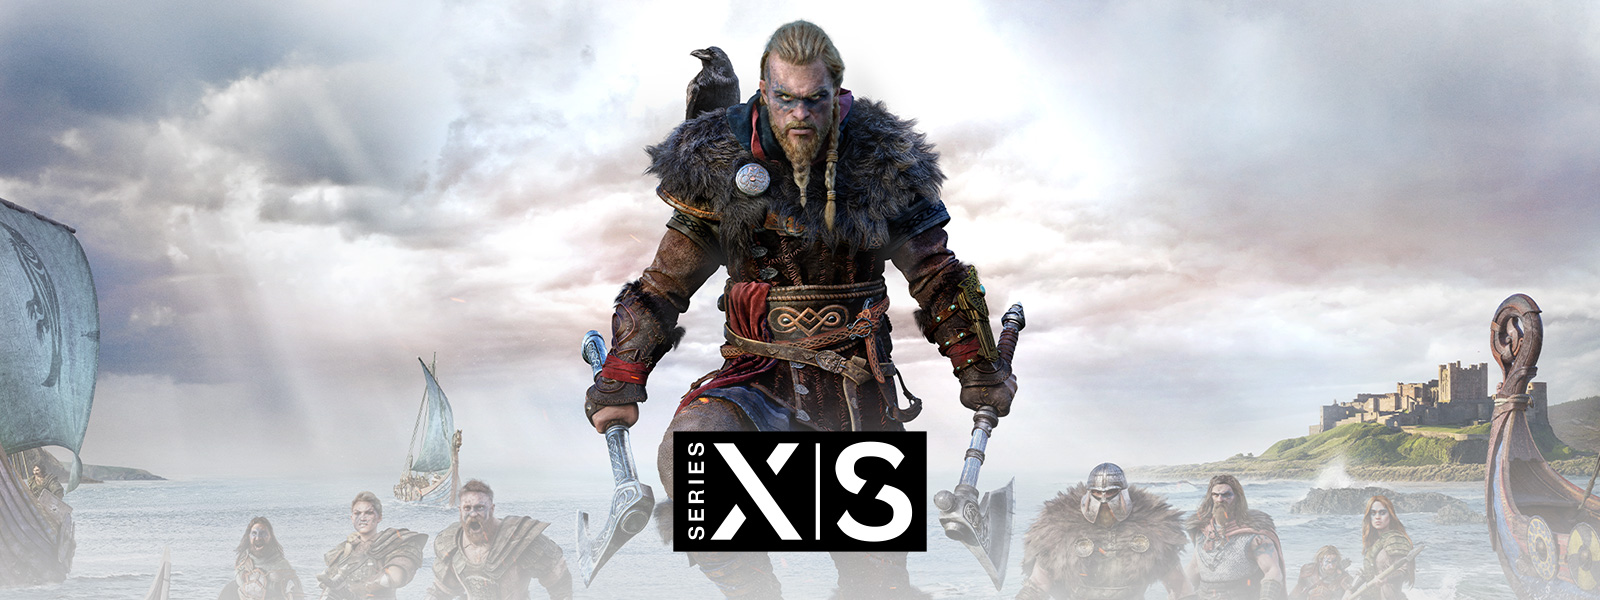 Assassin's Creed Valhalla, Xbox Series X|S, O lendário Viking Eivor lidera seu exército para a batalha.